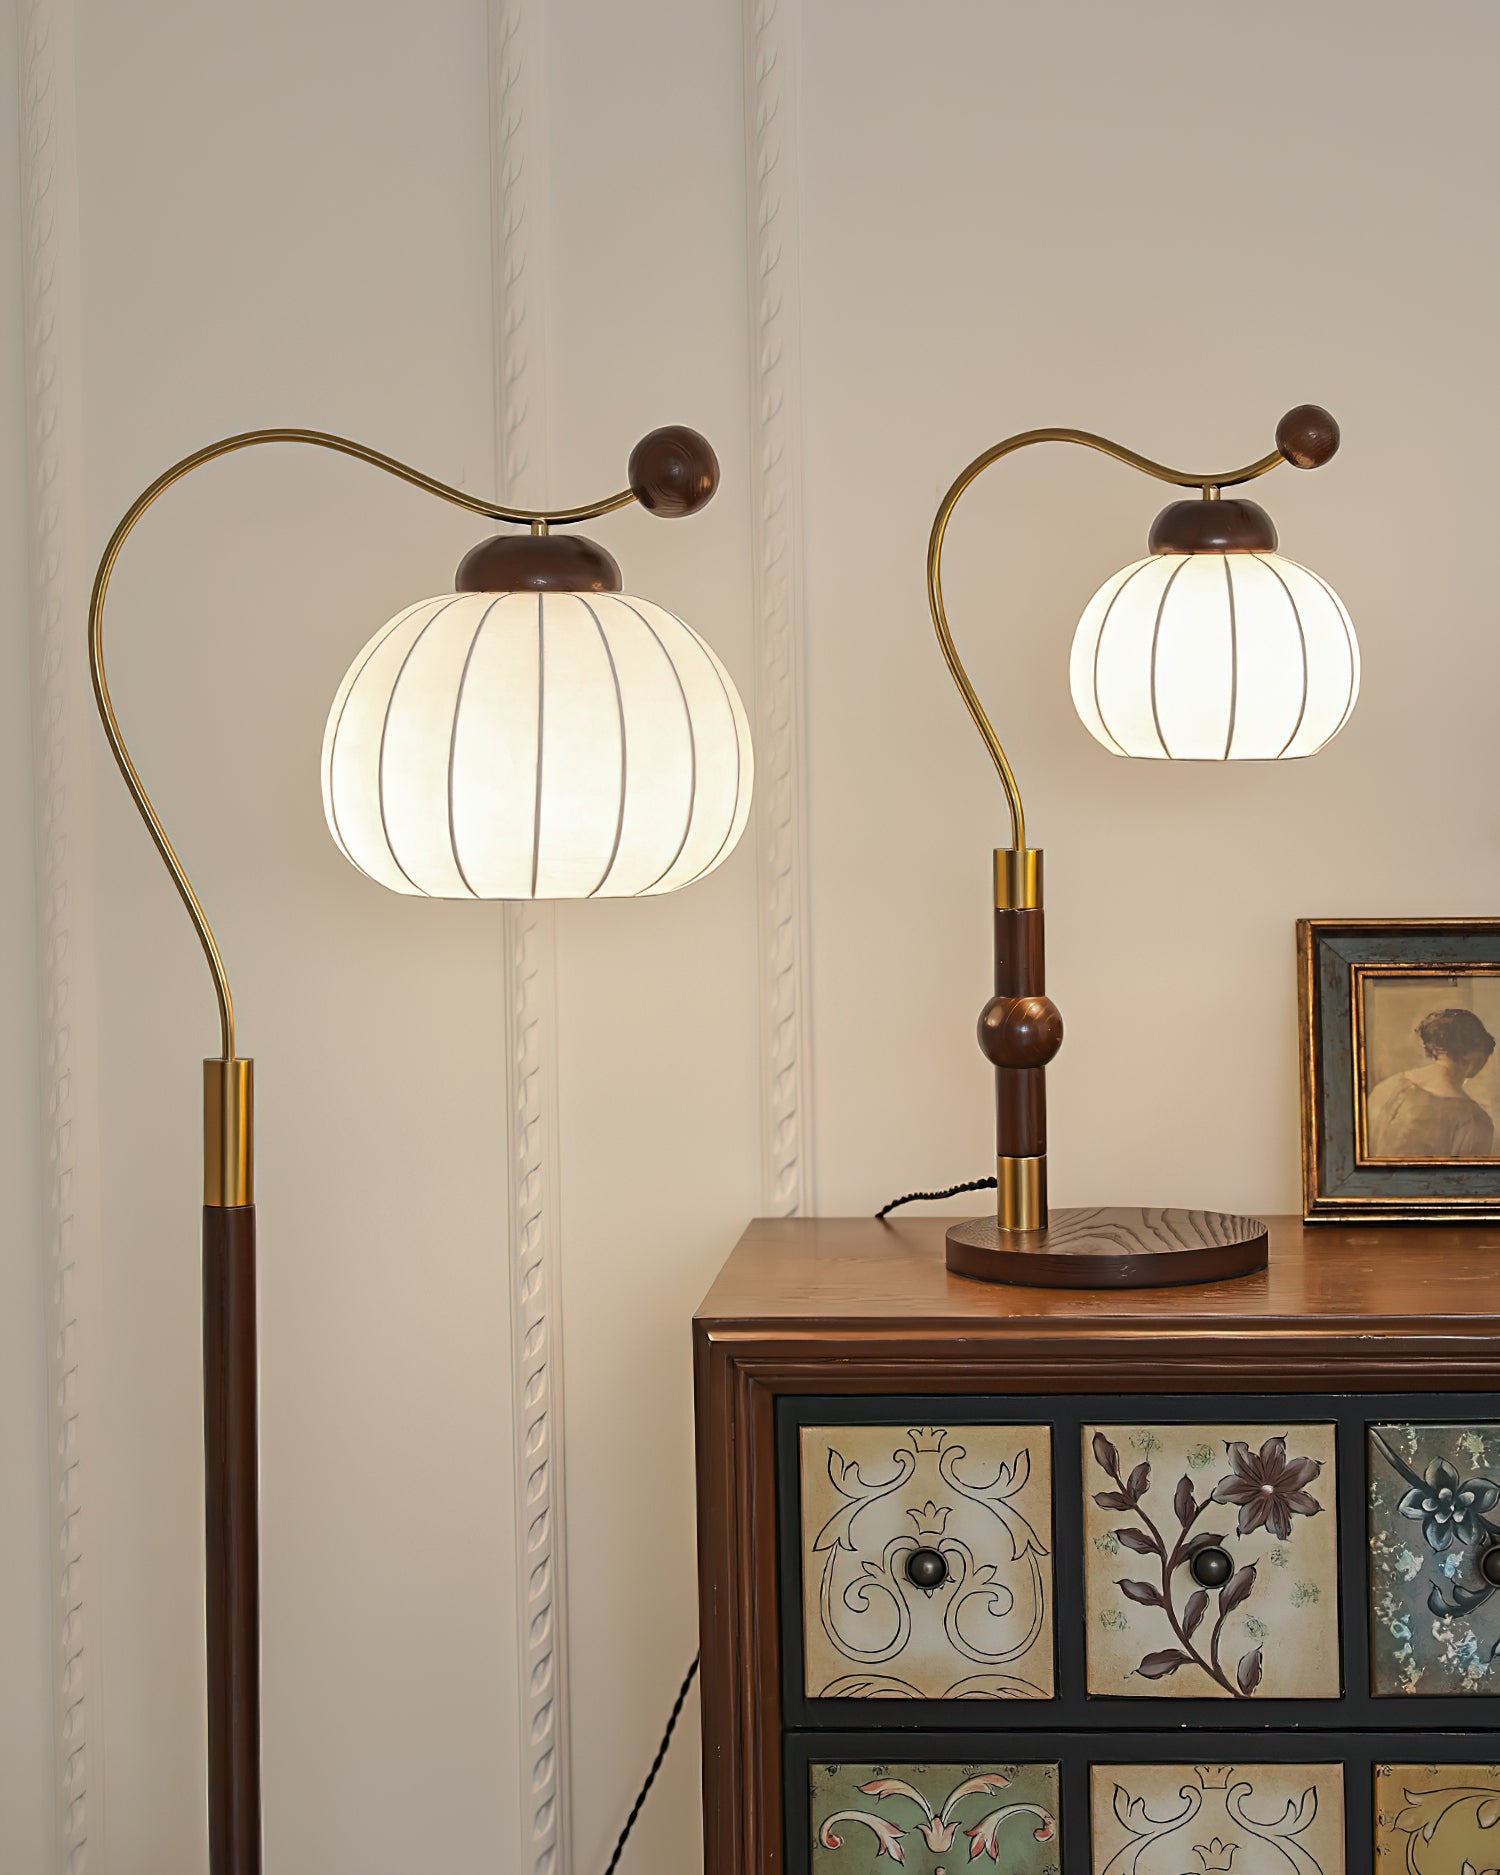 Marisa Table Lamp